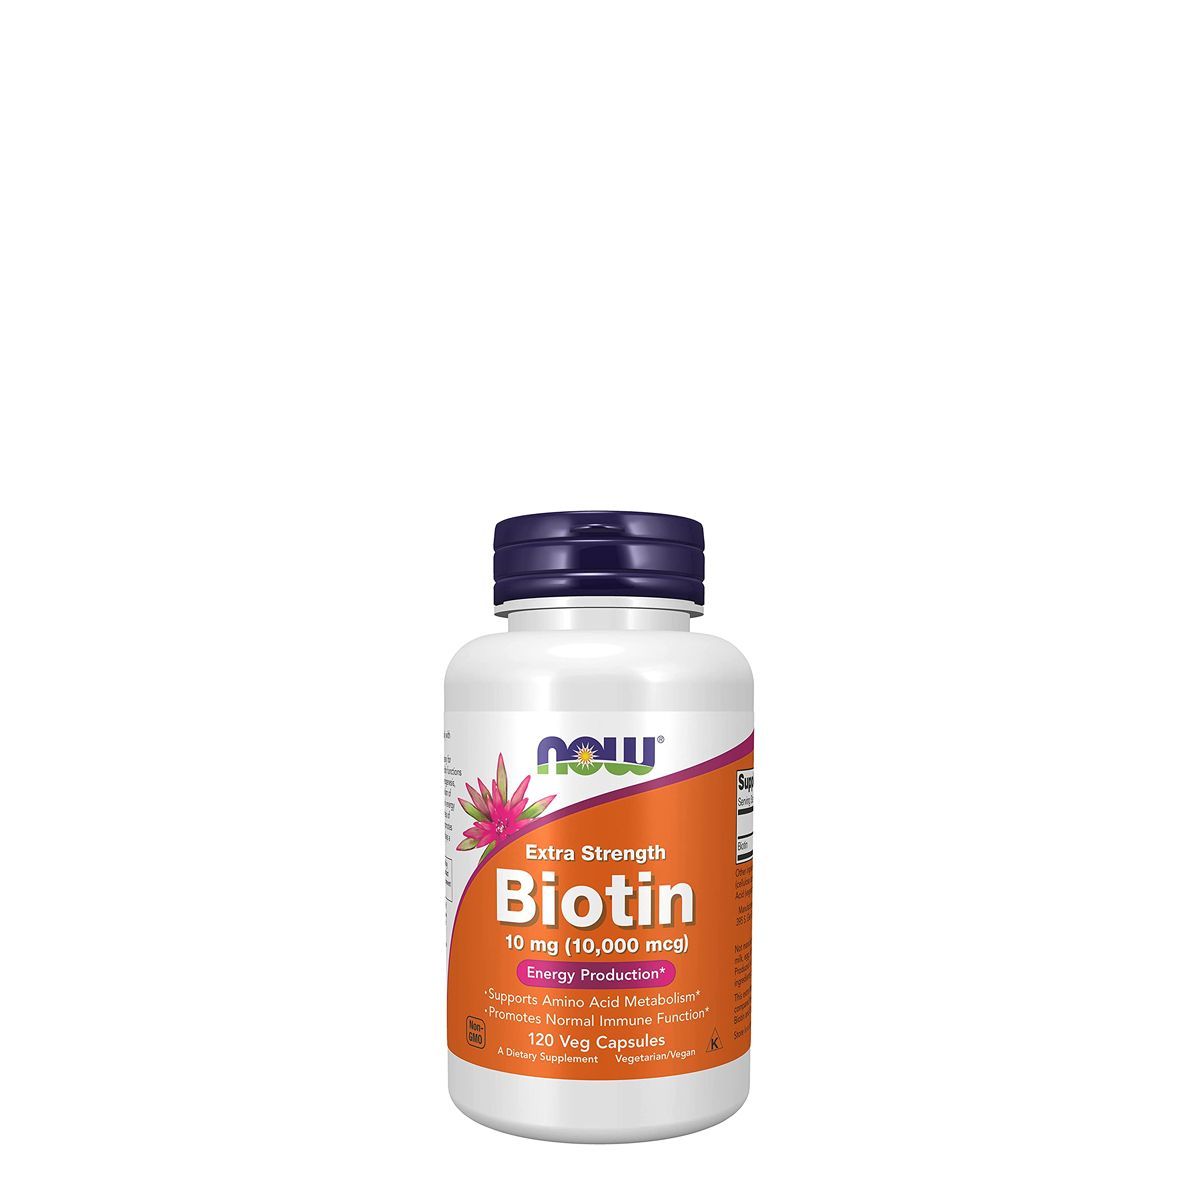 befolyásolja-e a biotin a szív egészségét)